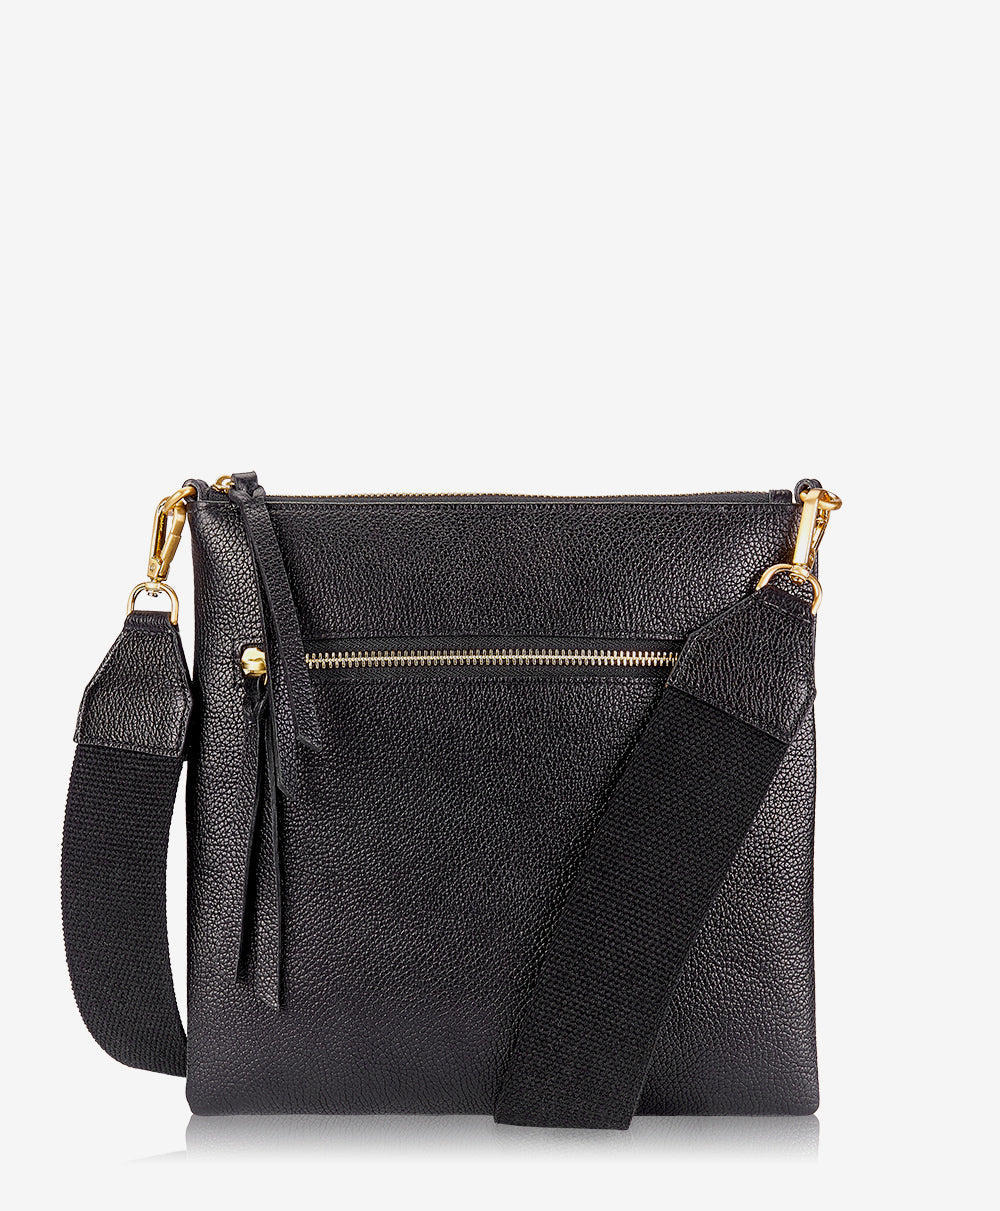 GiGi New York Kit Messenger Bag Black Pebble Grain Leather